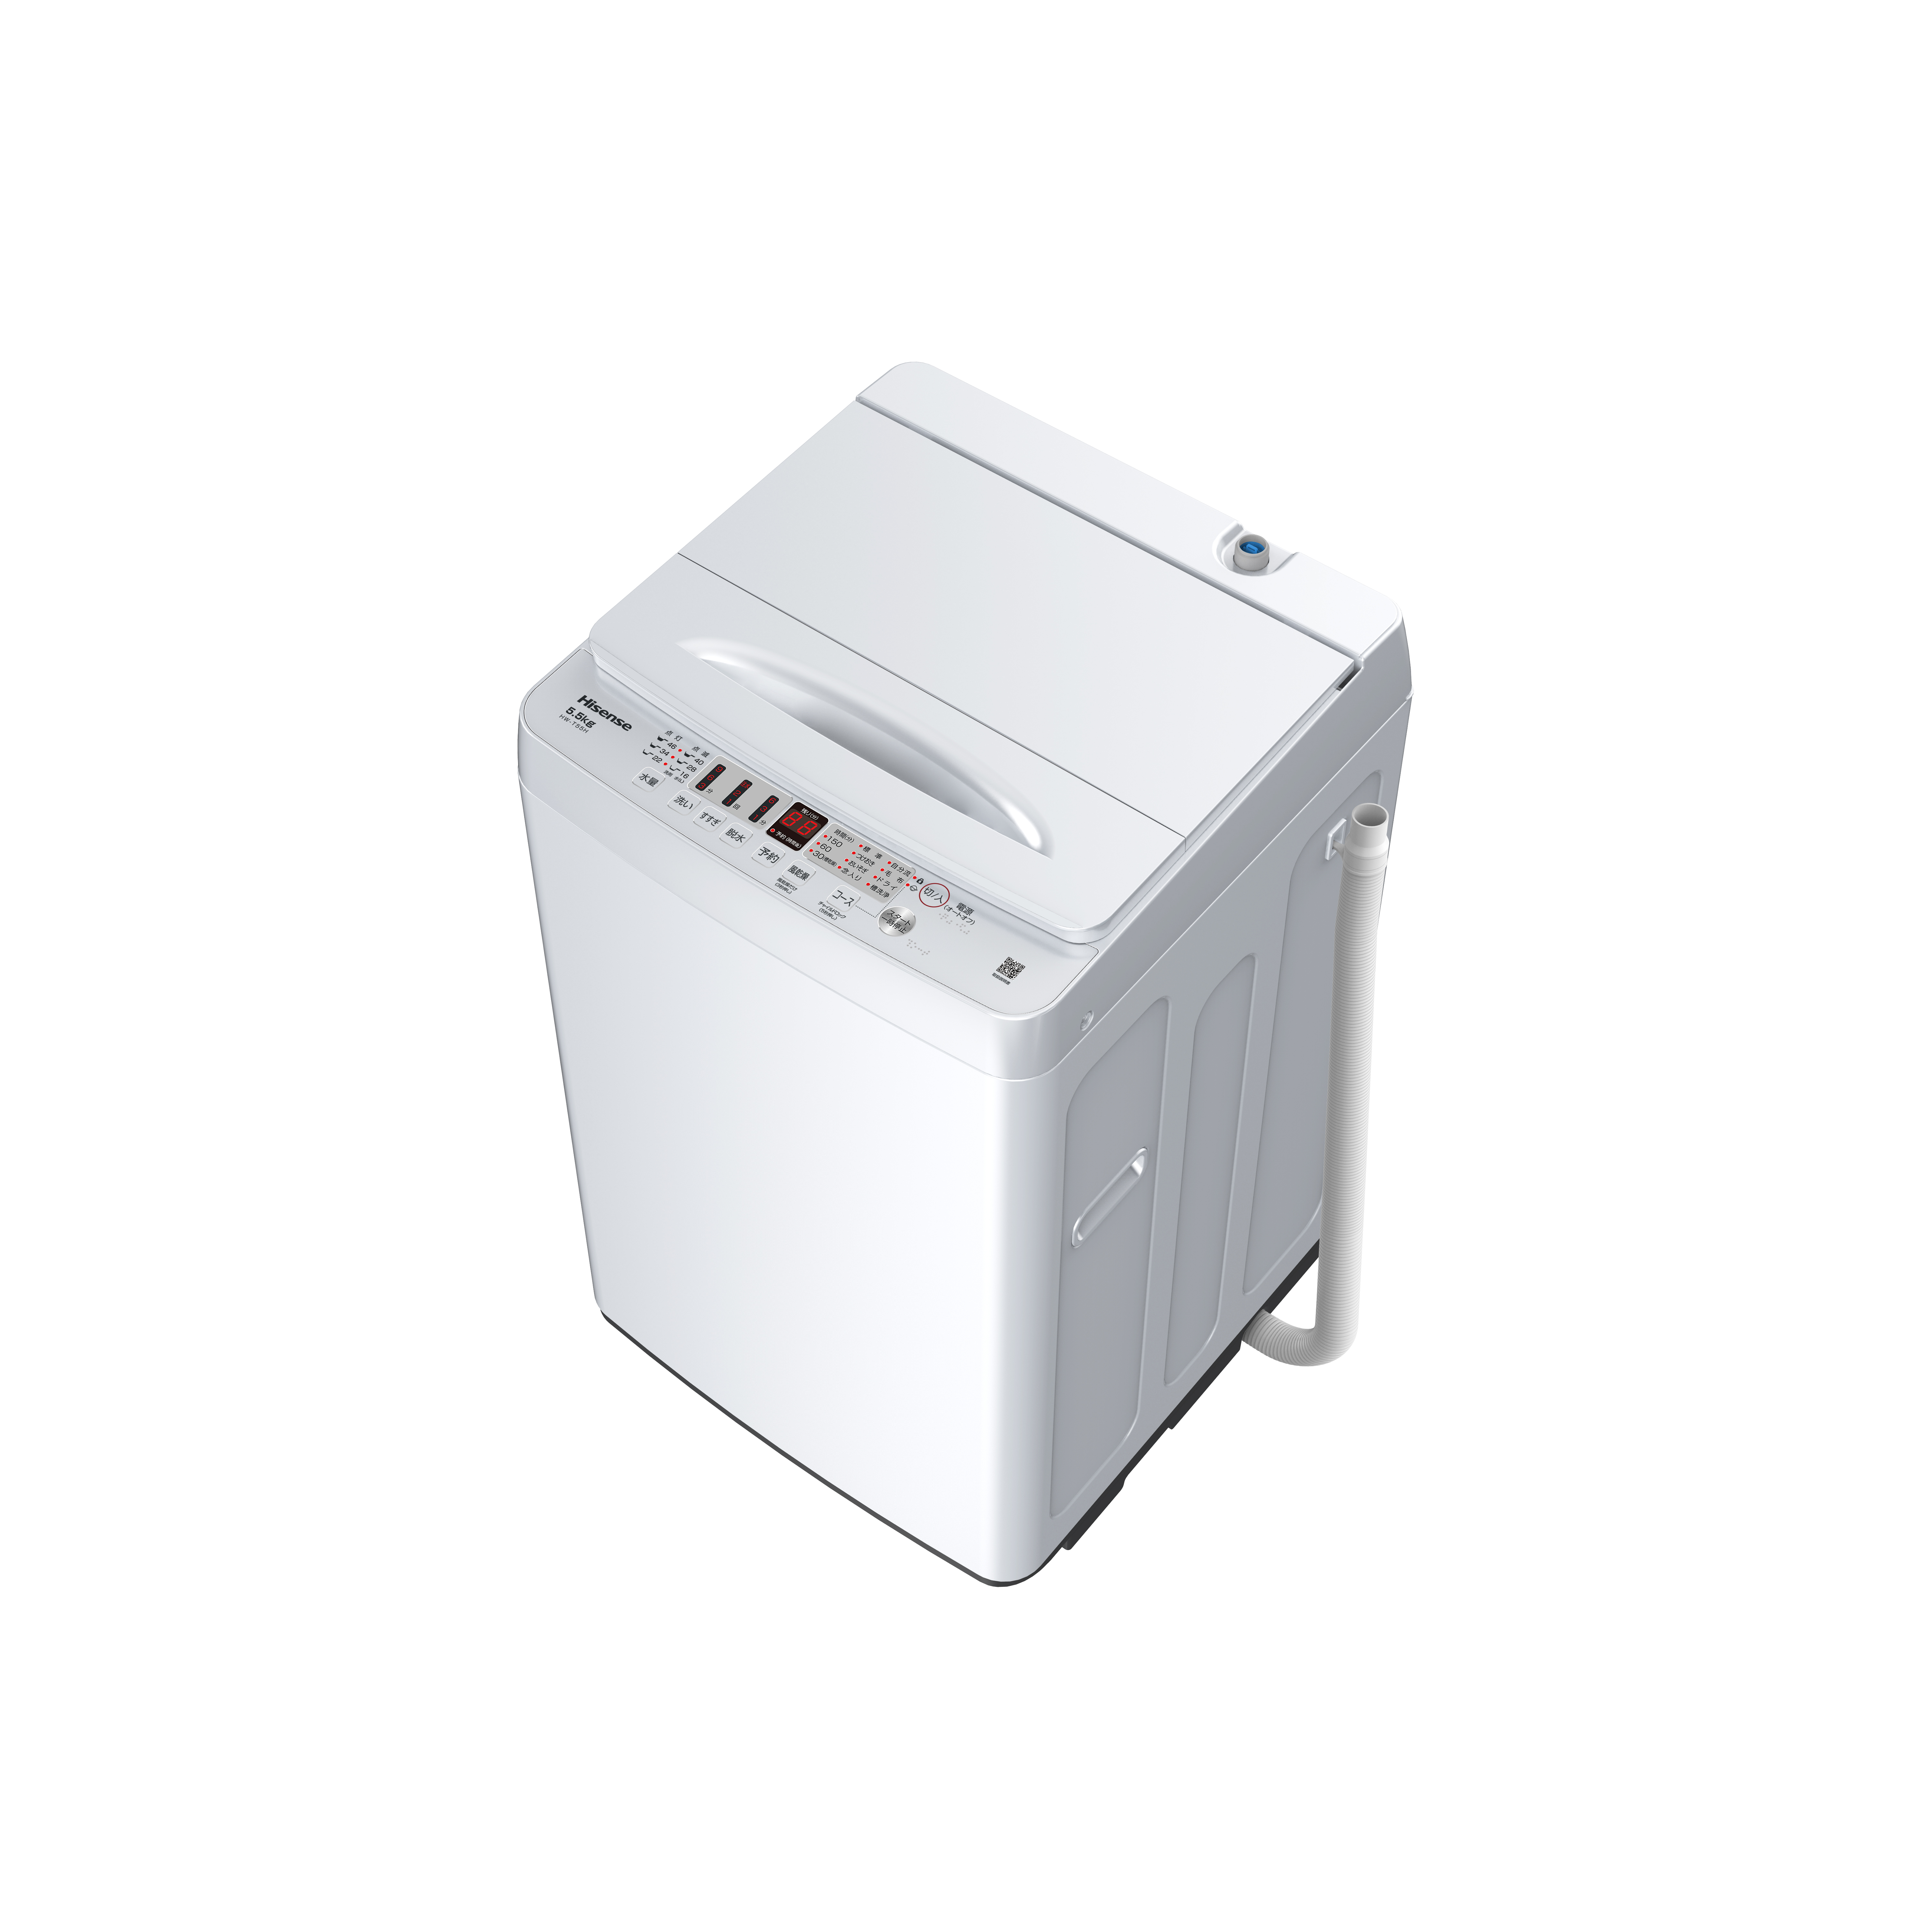 5.5kg 全自動洗濯機 HW-T55H| ハイセンスジャパン株式会社